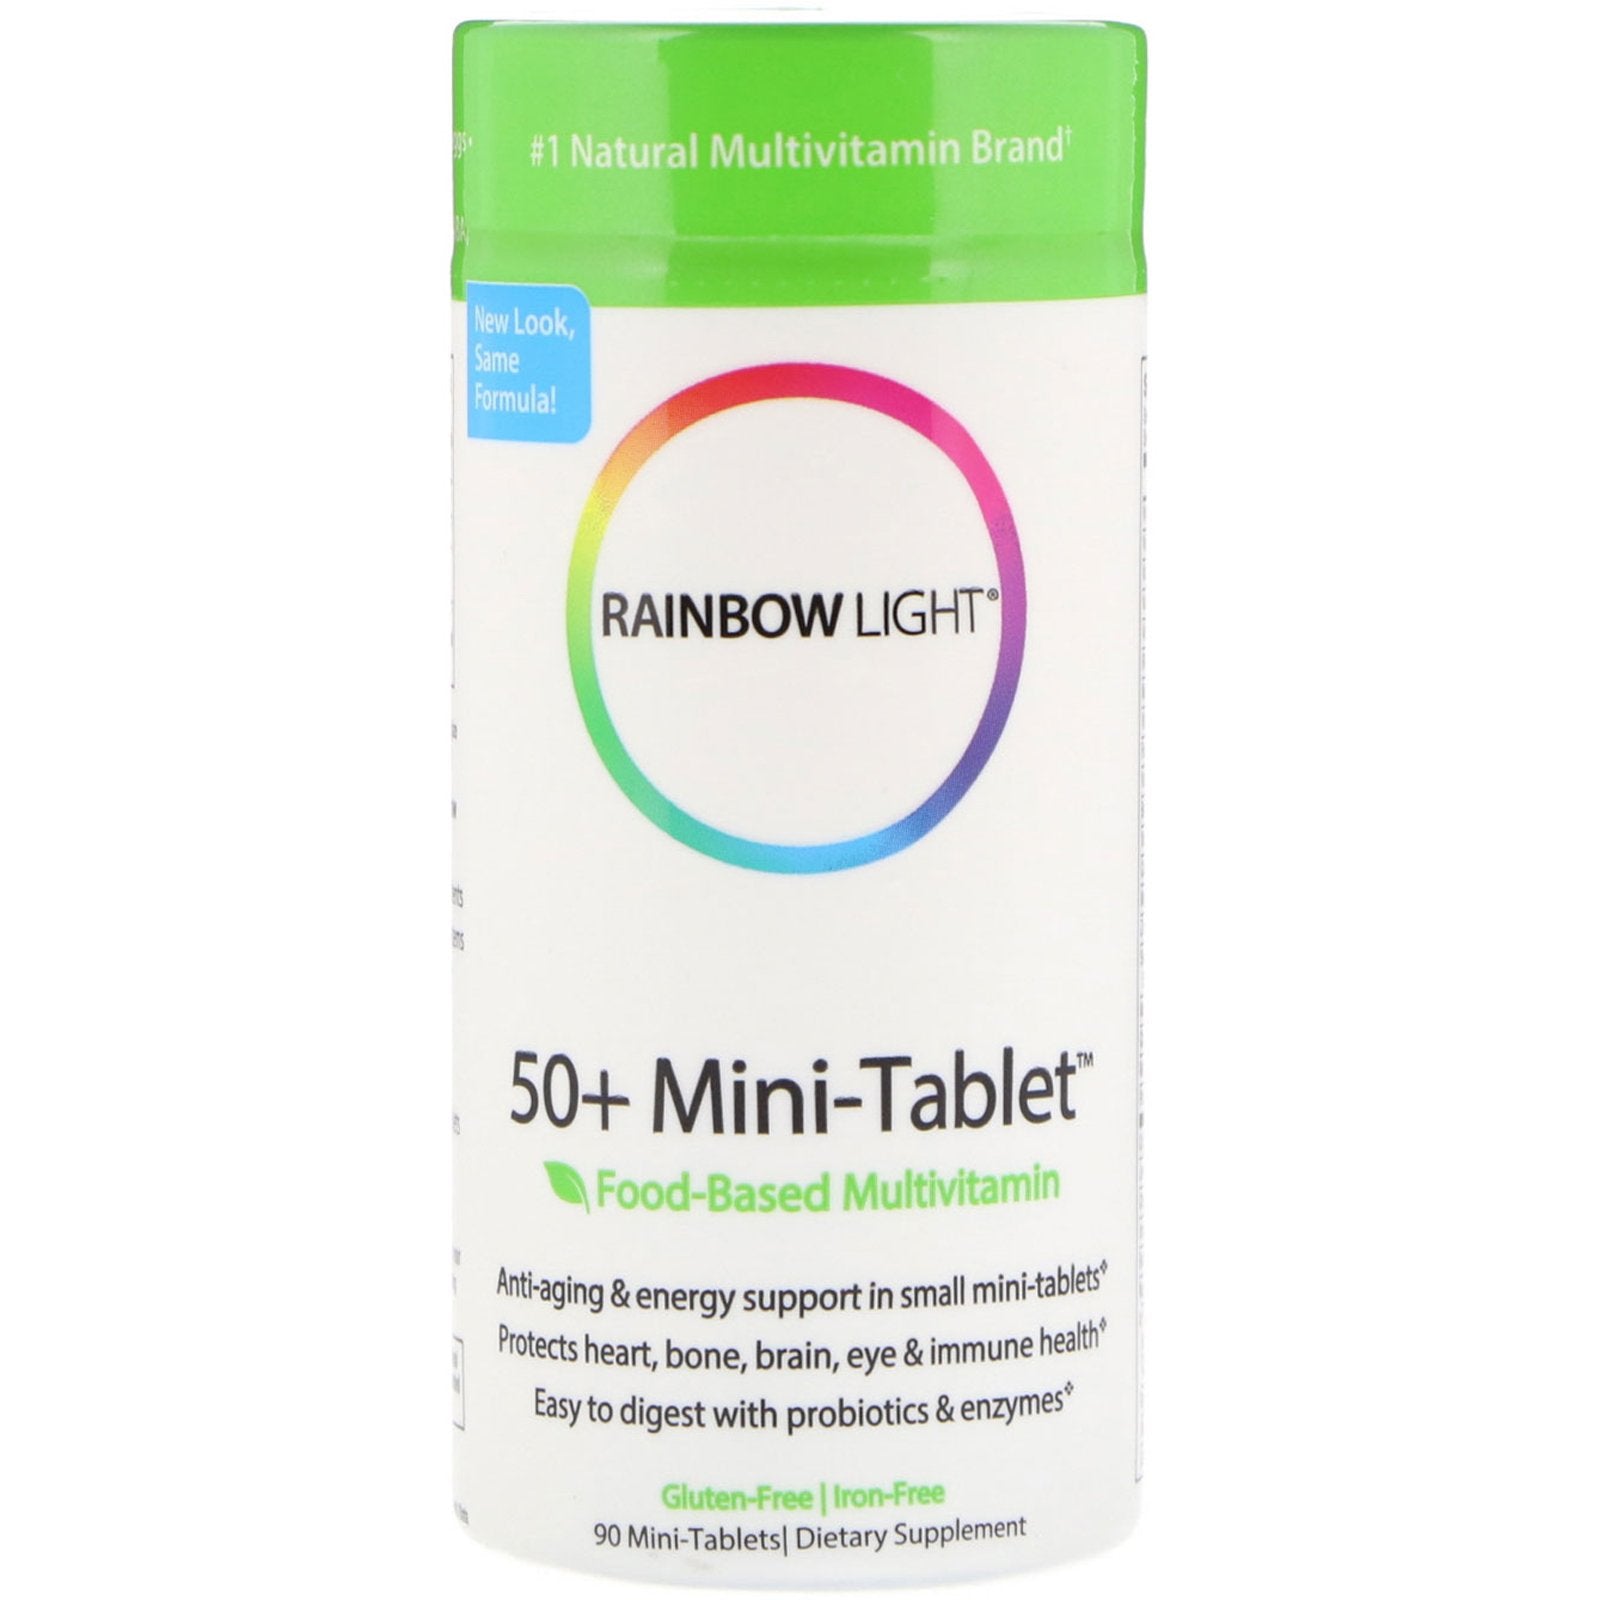 Rainbow Light, 50+ Mini Tablet, Food-Based Multivitamin, 90 Mini-Tablets